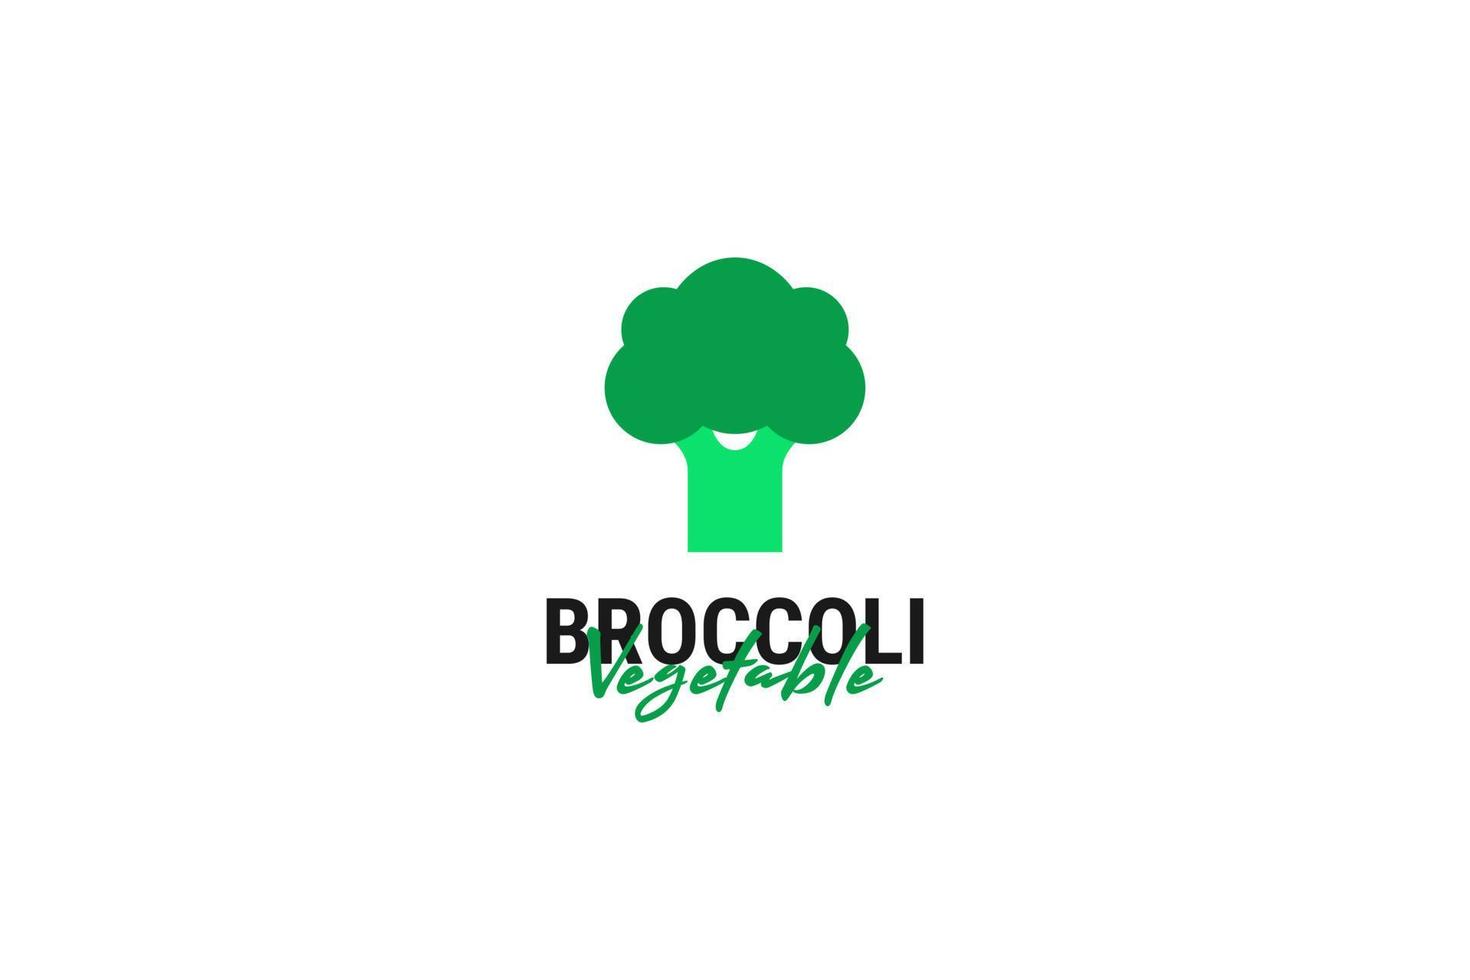 piatto broccoli verdura logo design vettore modello illustrazione